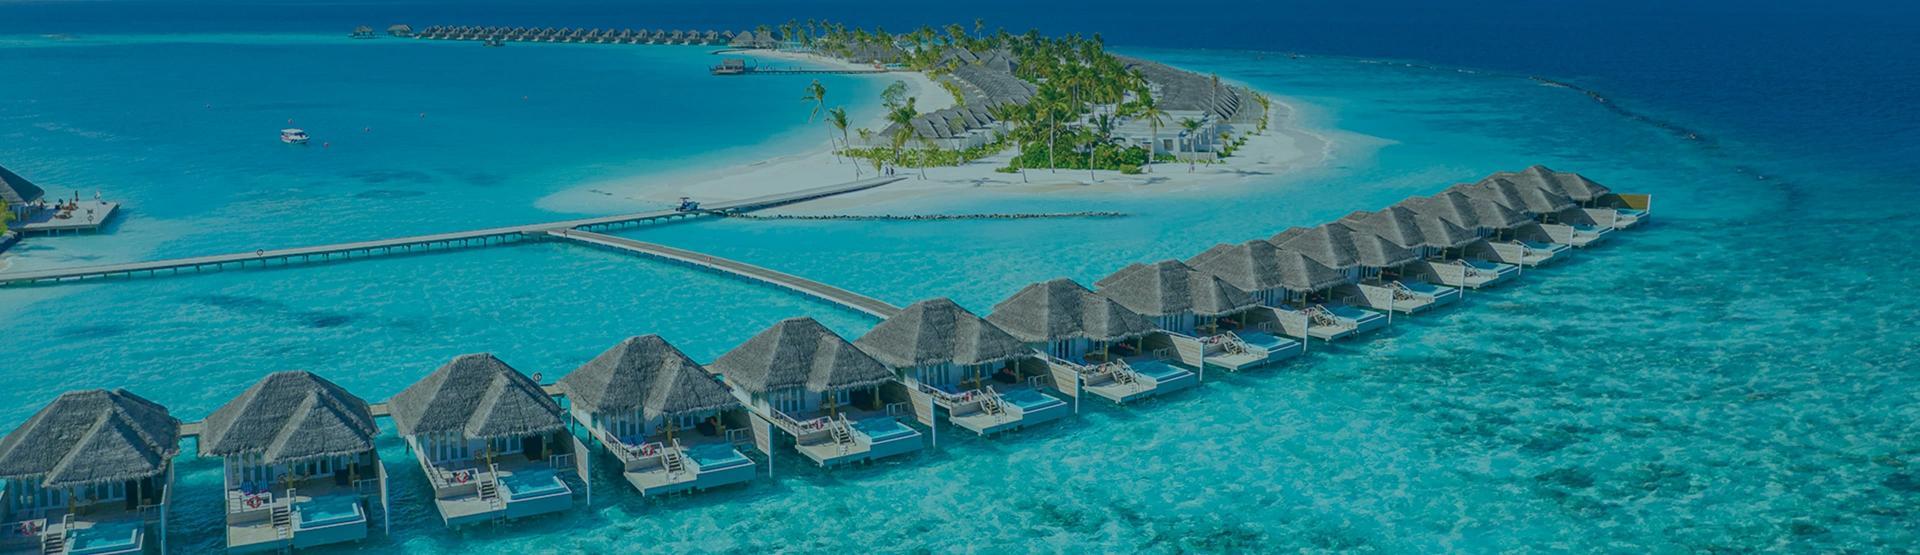 حجز تذاكر طيران رخيصة إلى جزر المالديف